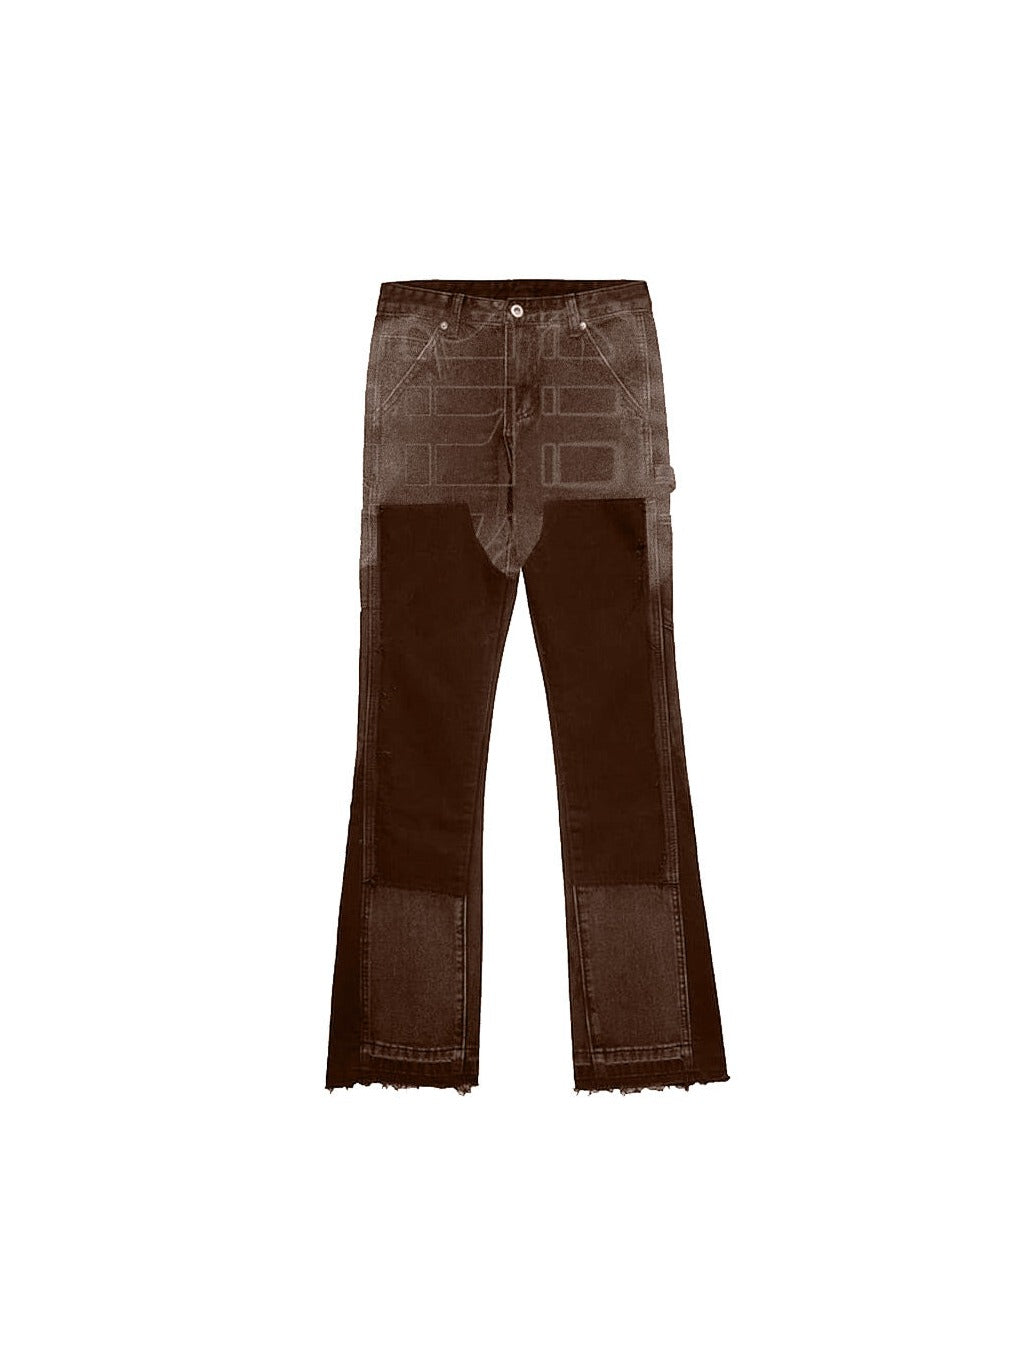 Sole et. Al Metro Flared Carpenter Denim Jeans : Brown